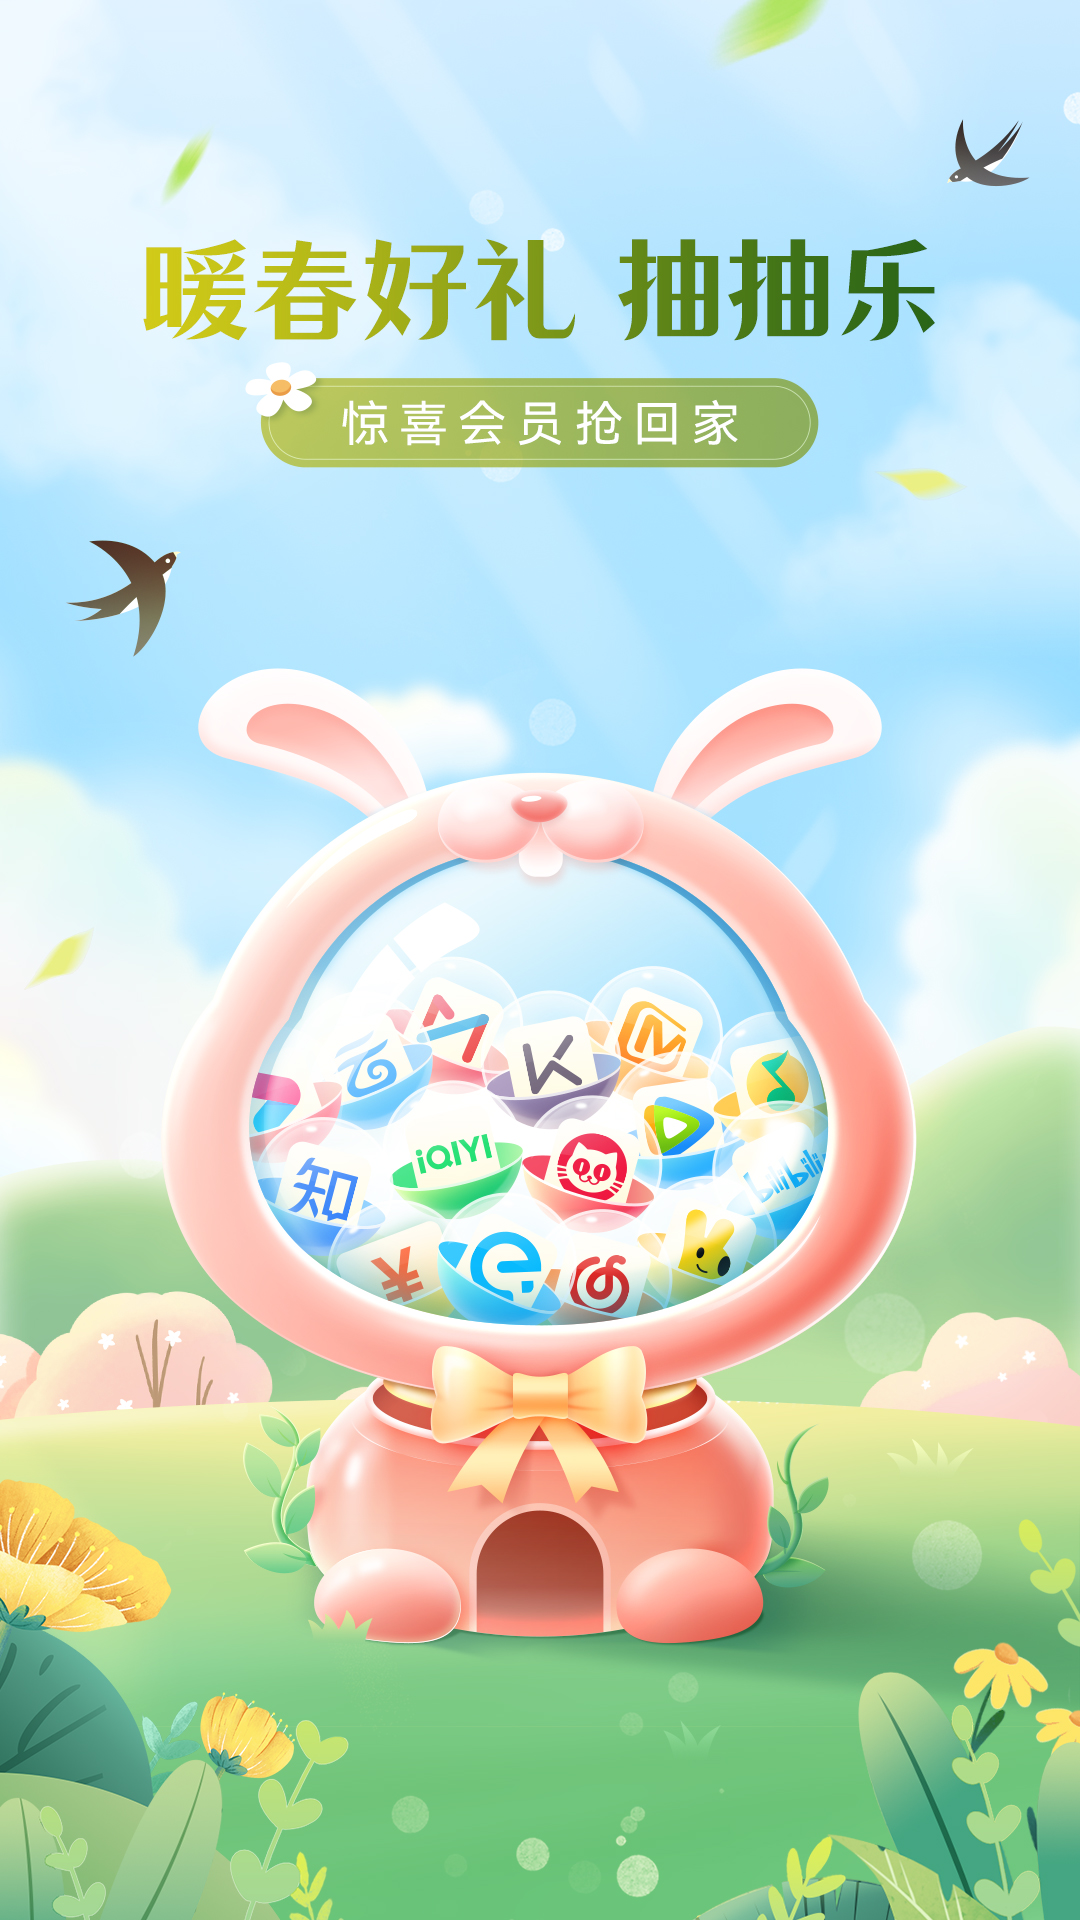 中国移动云盘安卓版v10.0.4最新版截图5